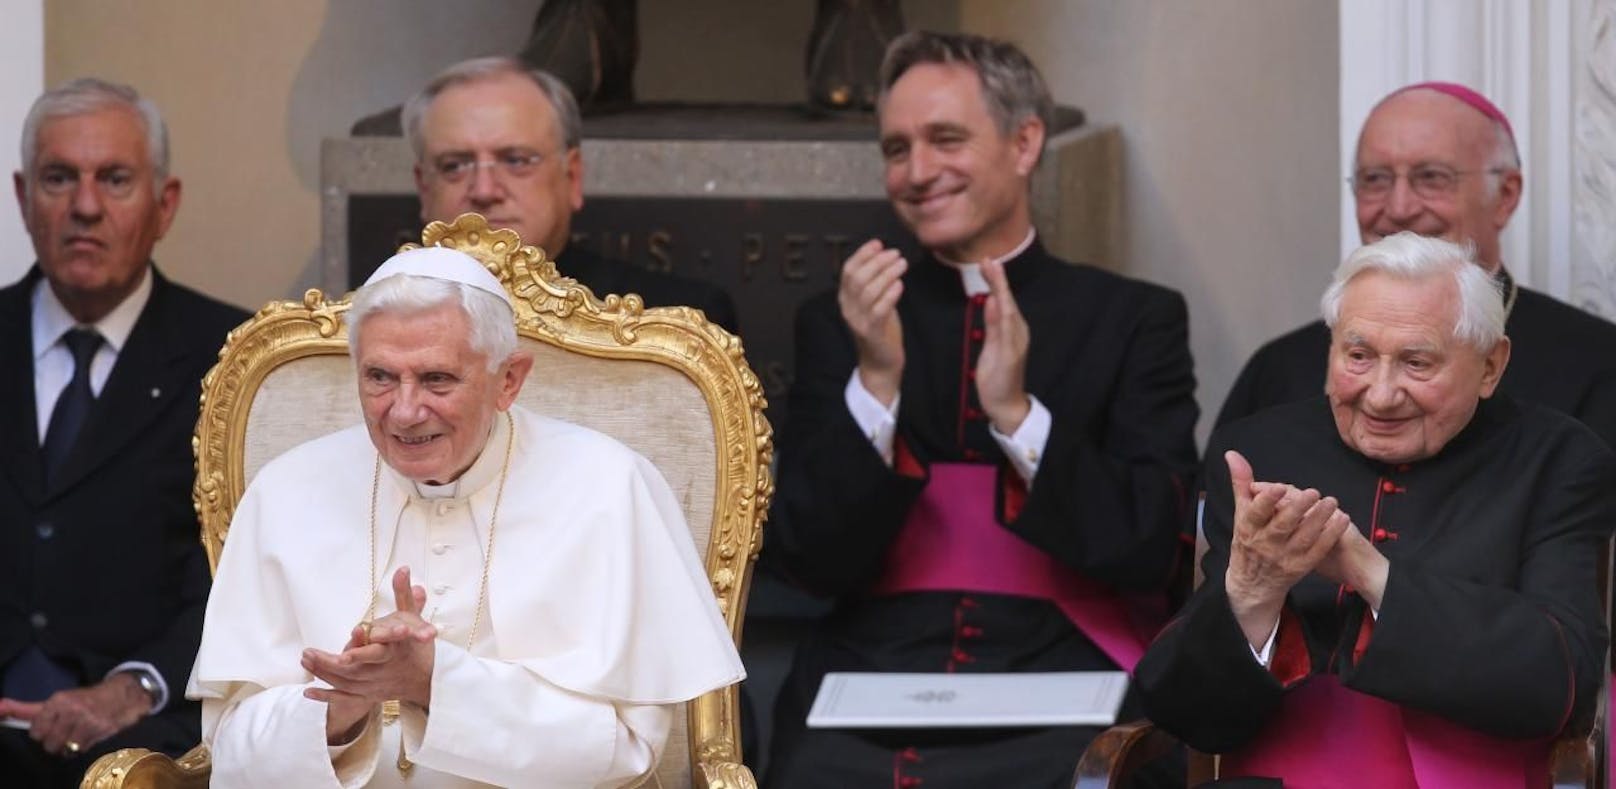 Papst Benedikt XVI. und sein Bruder Georg Ratzinger (r.) klatschen am Freitag (03.08.2012) in der päpstlichen Sommerresidenz in Castel Gandolfo (Italien), im Hintergrund der Privatsekretär von Joseph Ratzinger, Georg Gänswein.